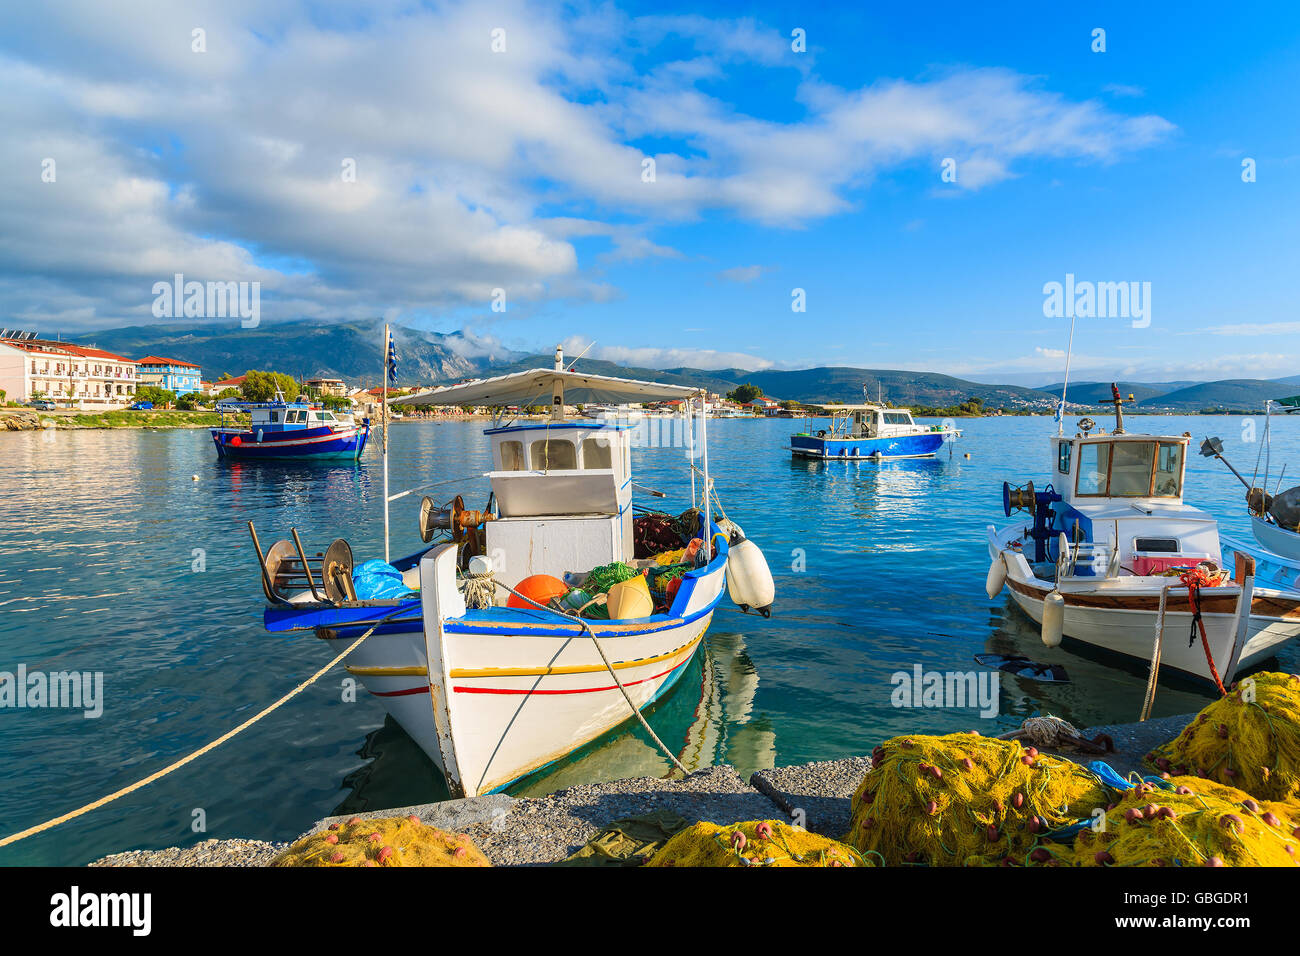 Bateaux de pêche dans le port grec au lever du soleil, l'île de Samos, Grèce Banque D'Images